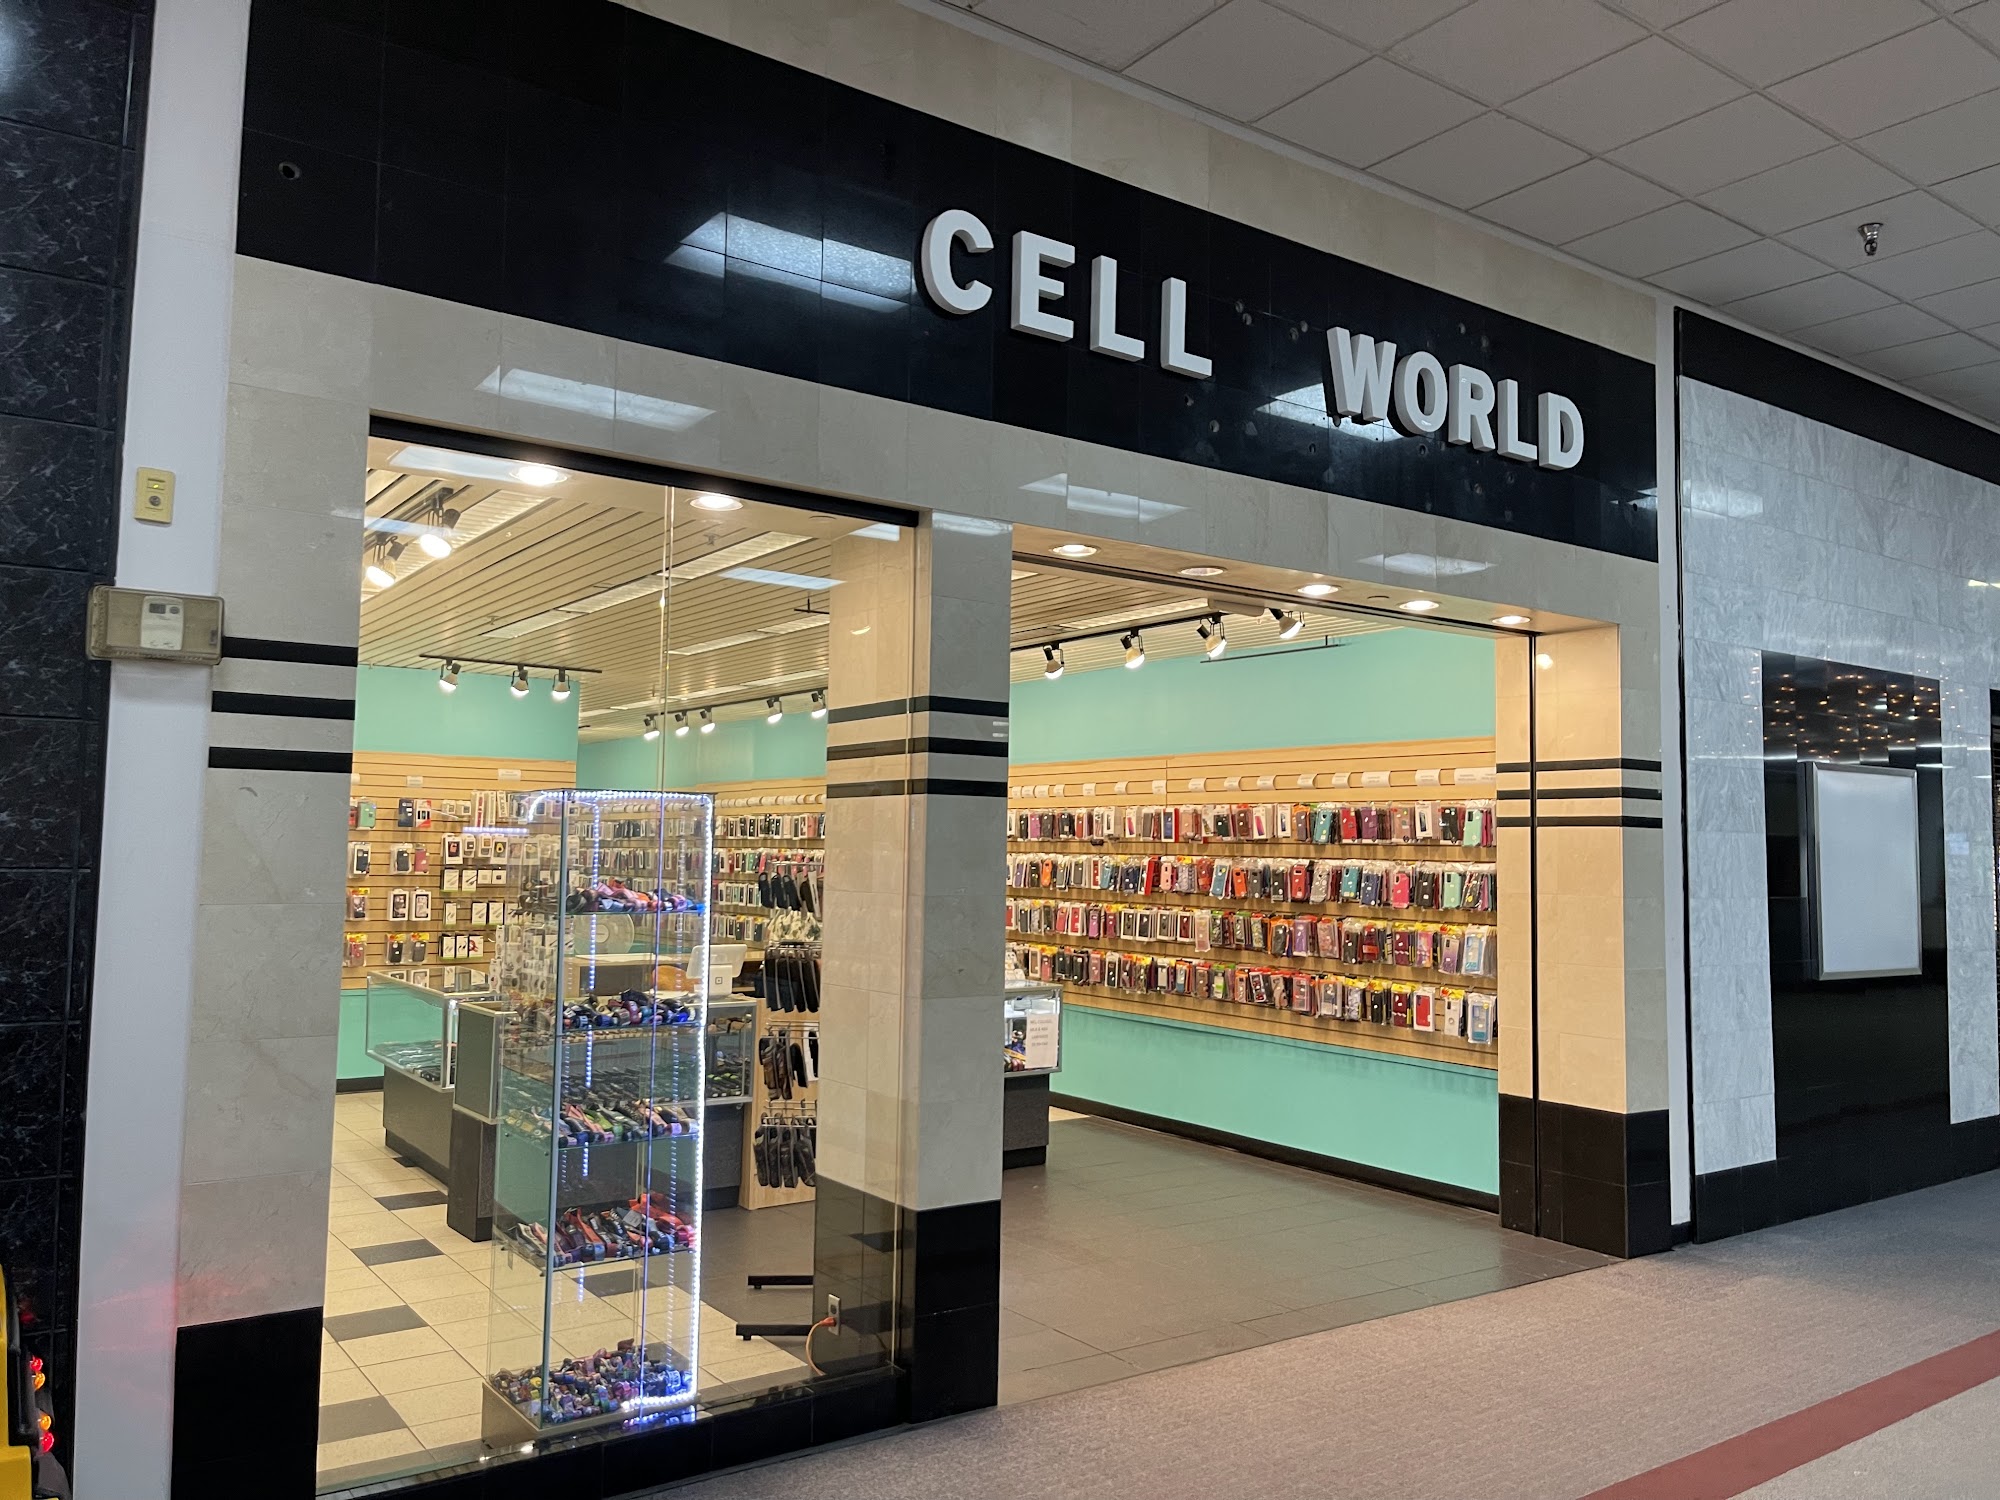 Cell World (Kiosk)